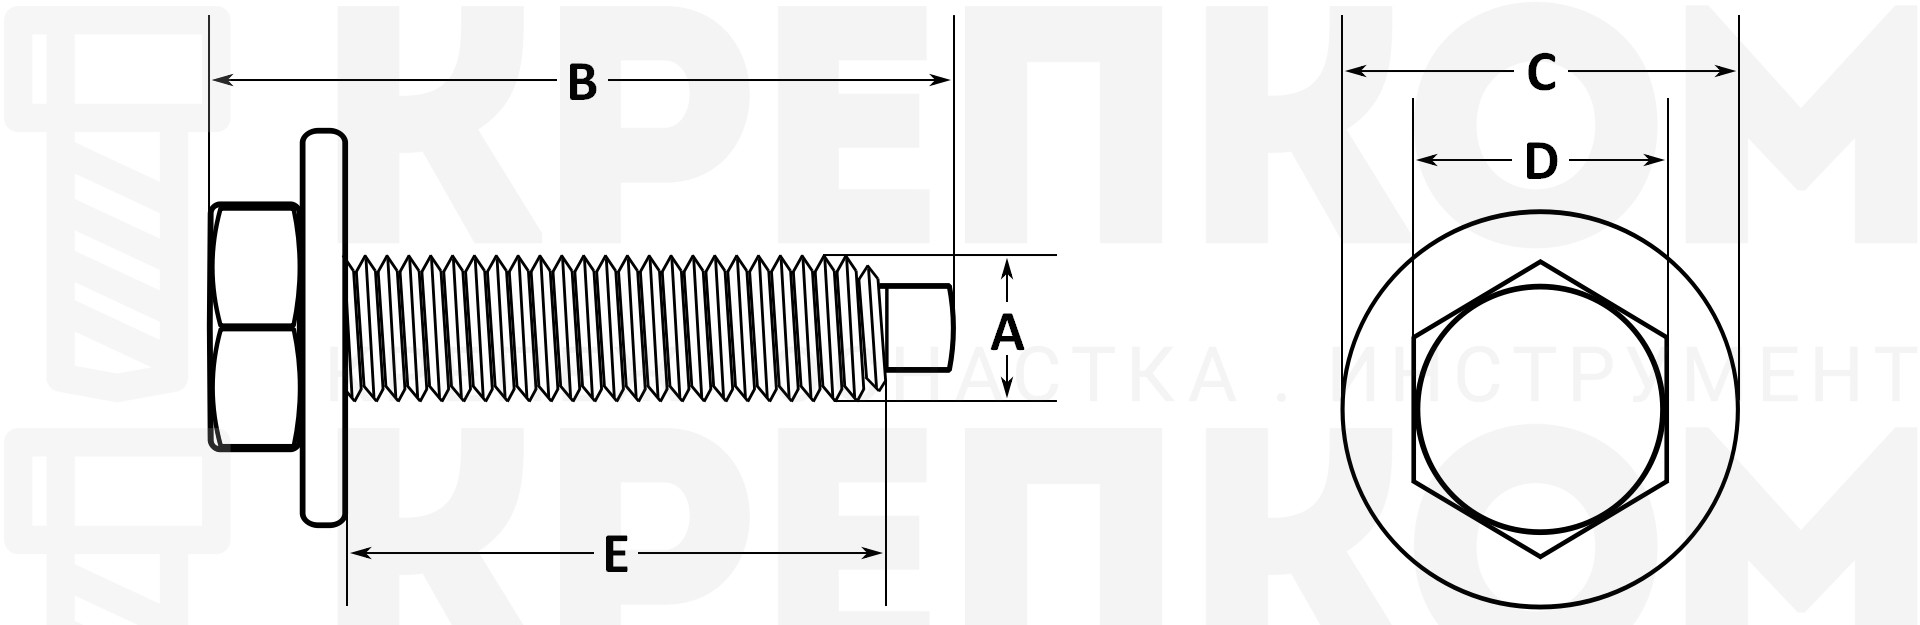 Болт шестигранный М8 K2212 дюймовая резьба с шайбой - схема, чертеж